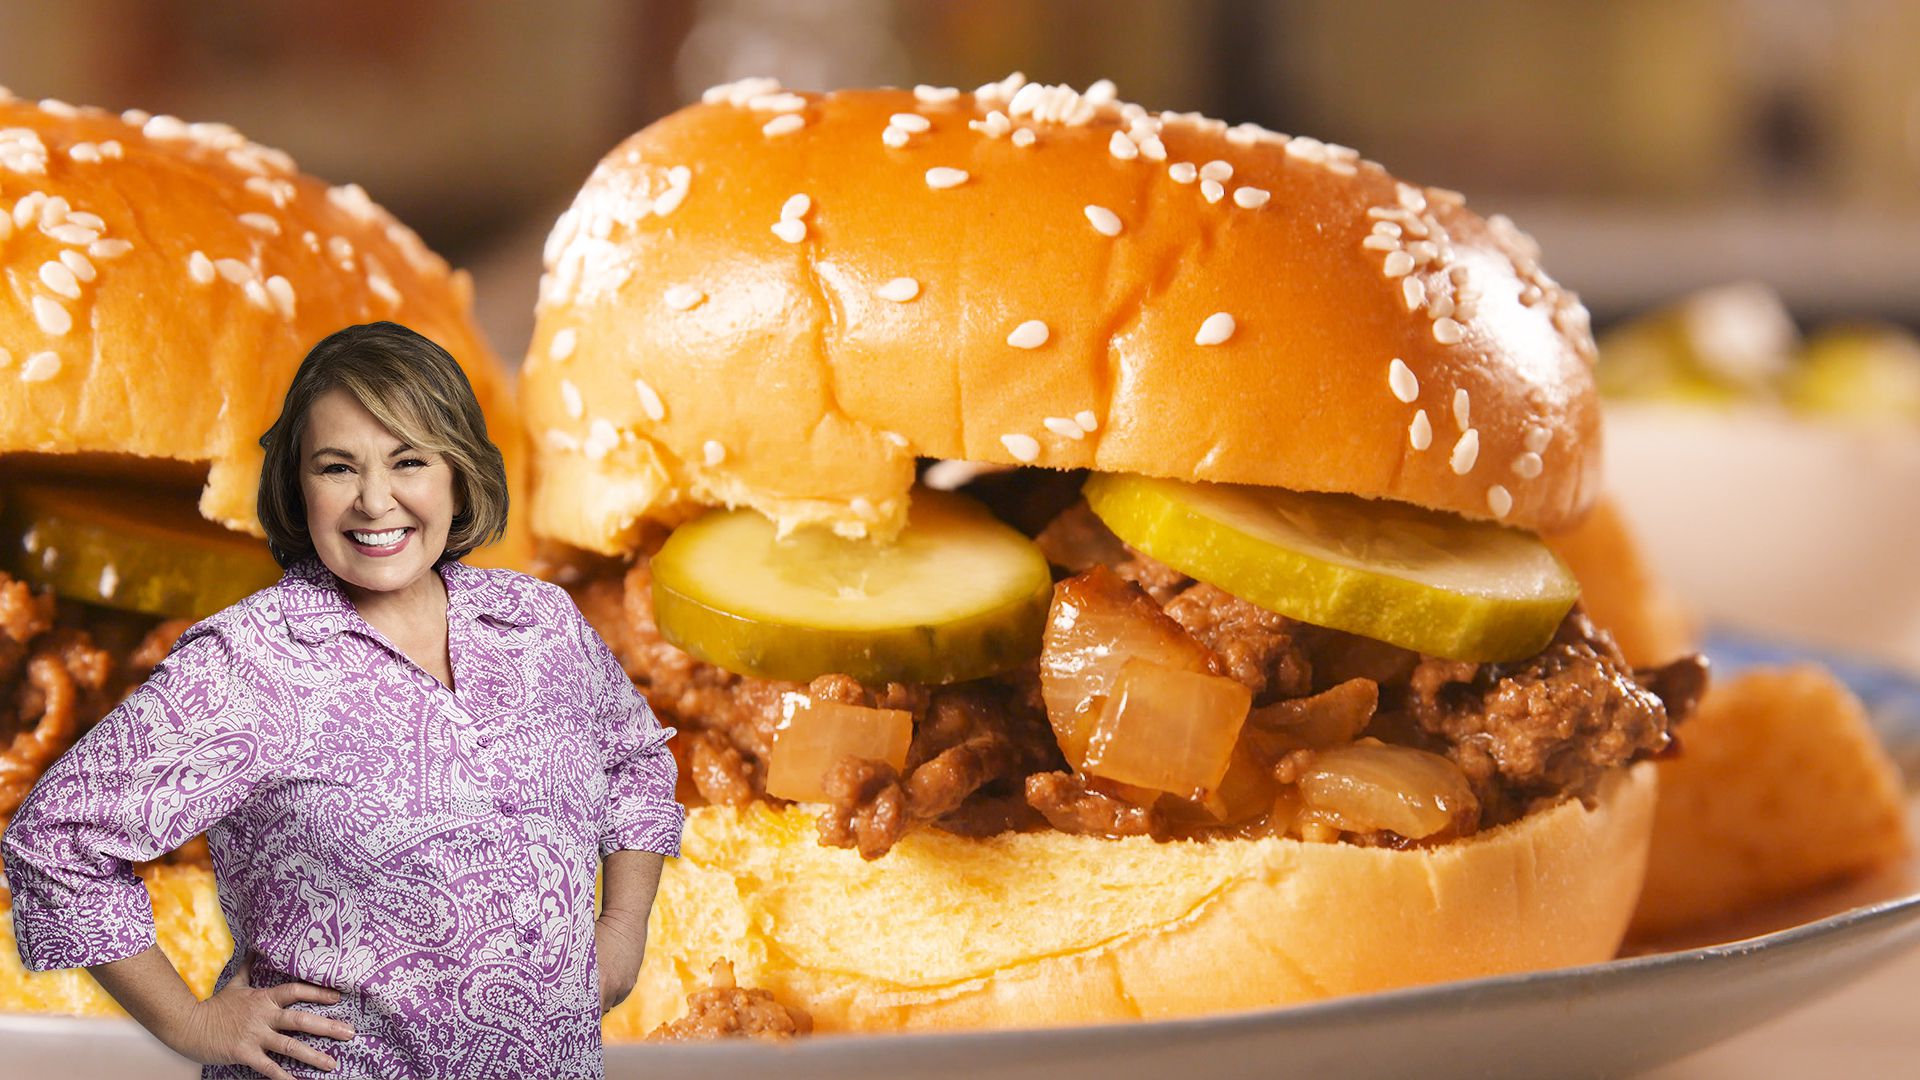 Best Roseanne's Loose Meat Sandwich Recipe - How To Make Roseanne's ...